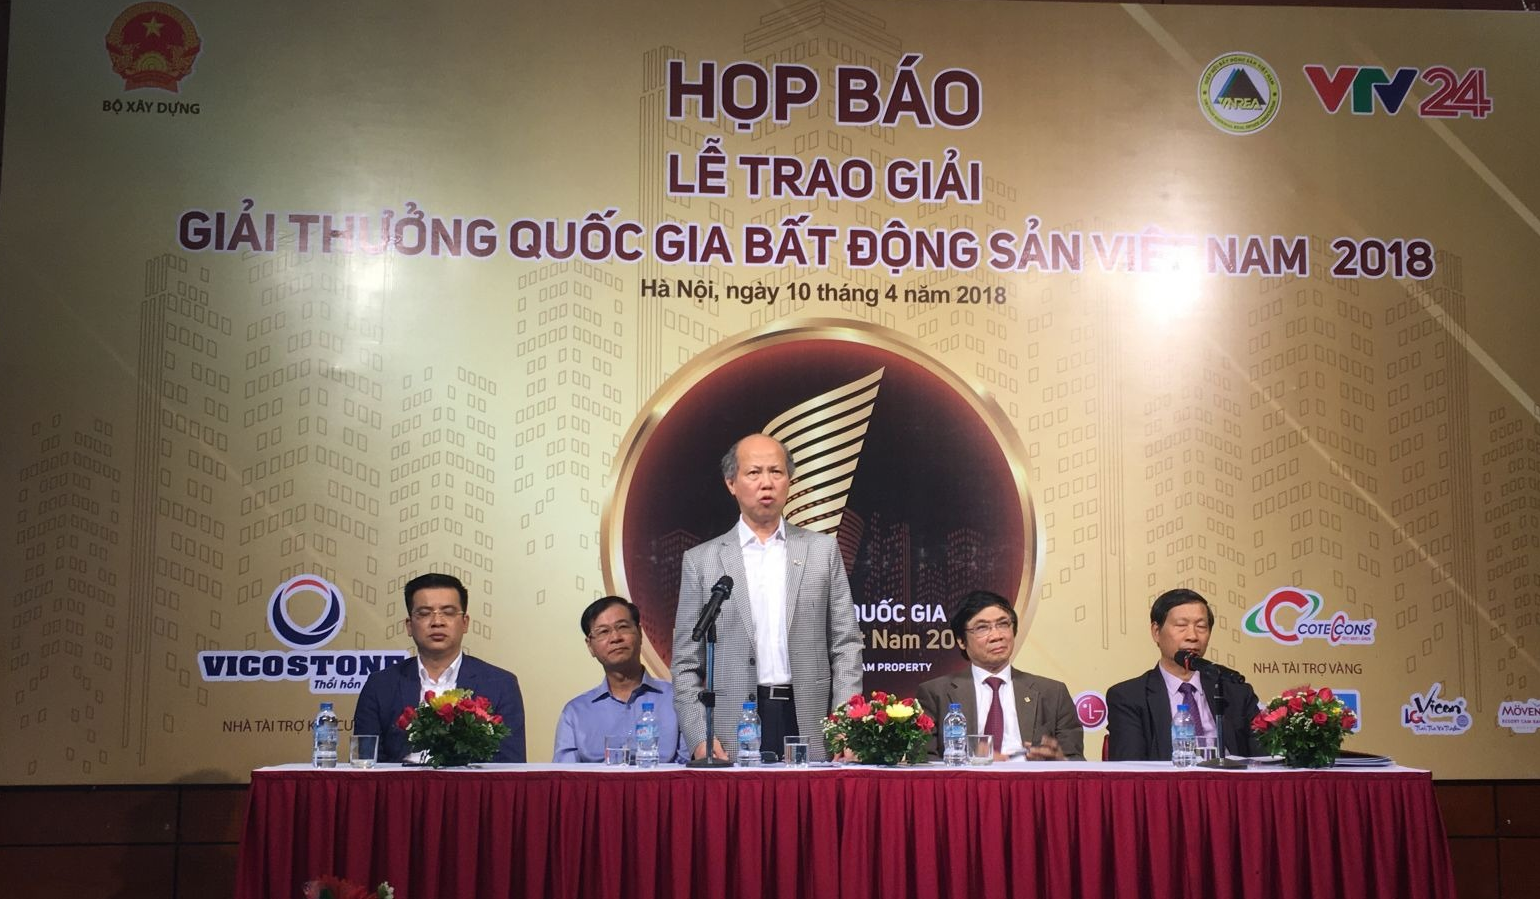 Chủ tịch VNREA Nguyễn Trần Nam phát biểu tại Họp báo.